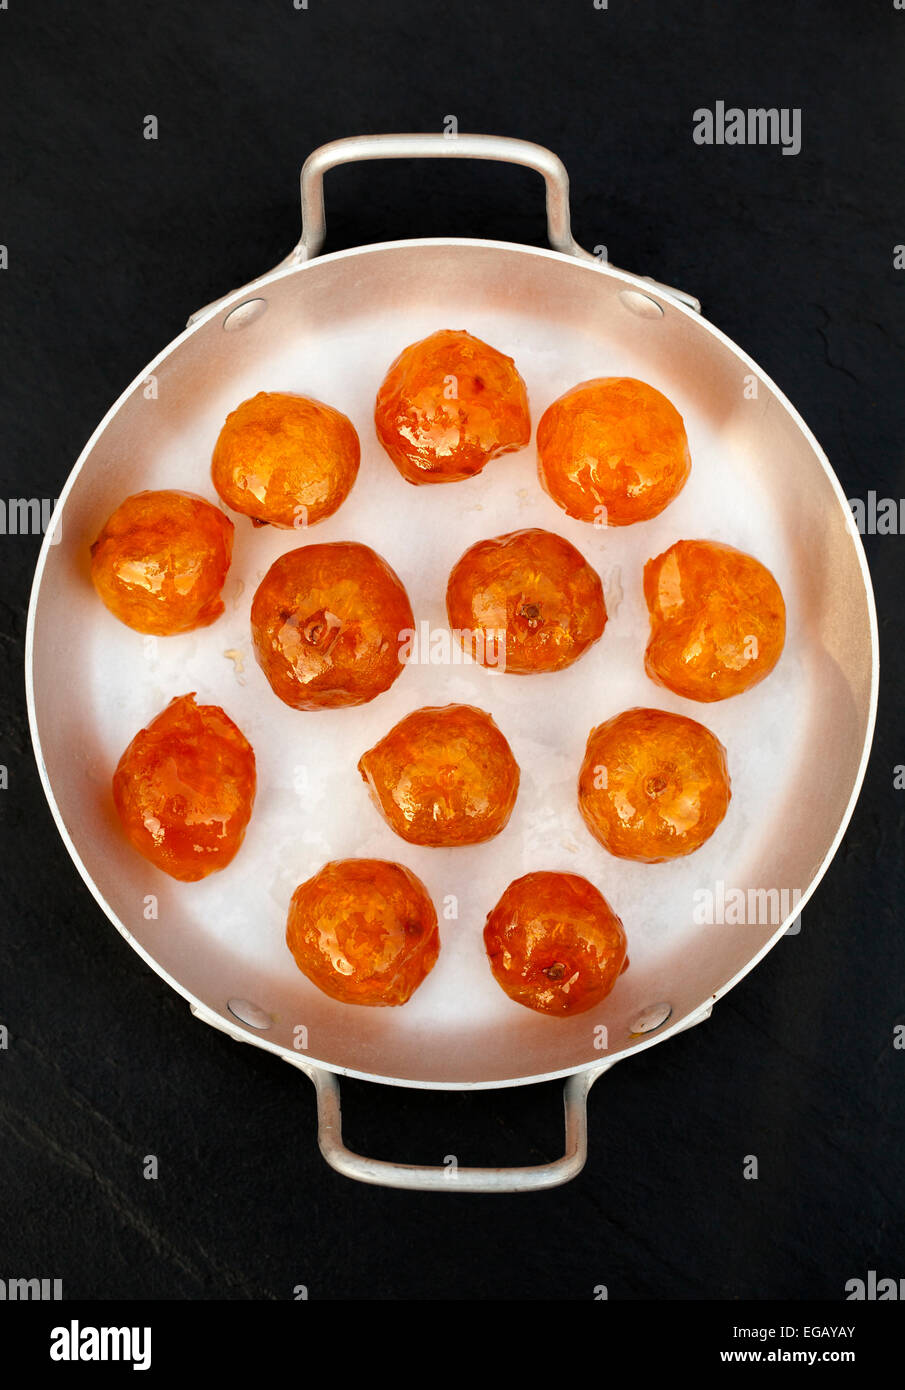 Conserves de fruits confits Orange Kumquat - une spécialité de Hoi An Banque D'Images